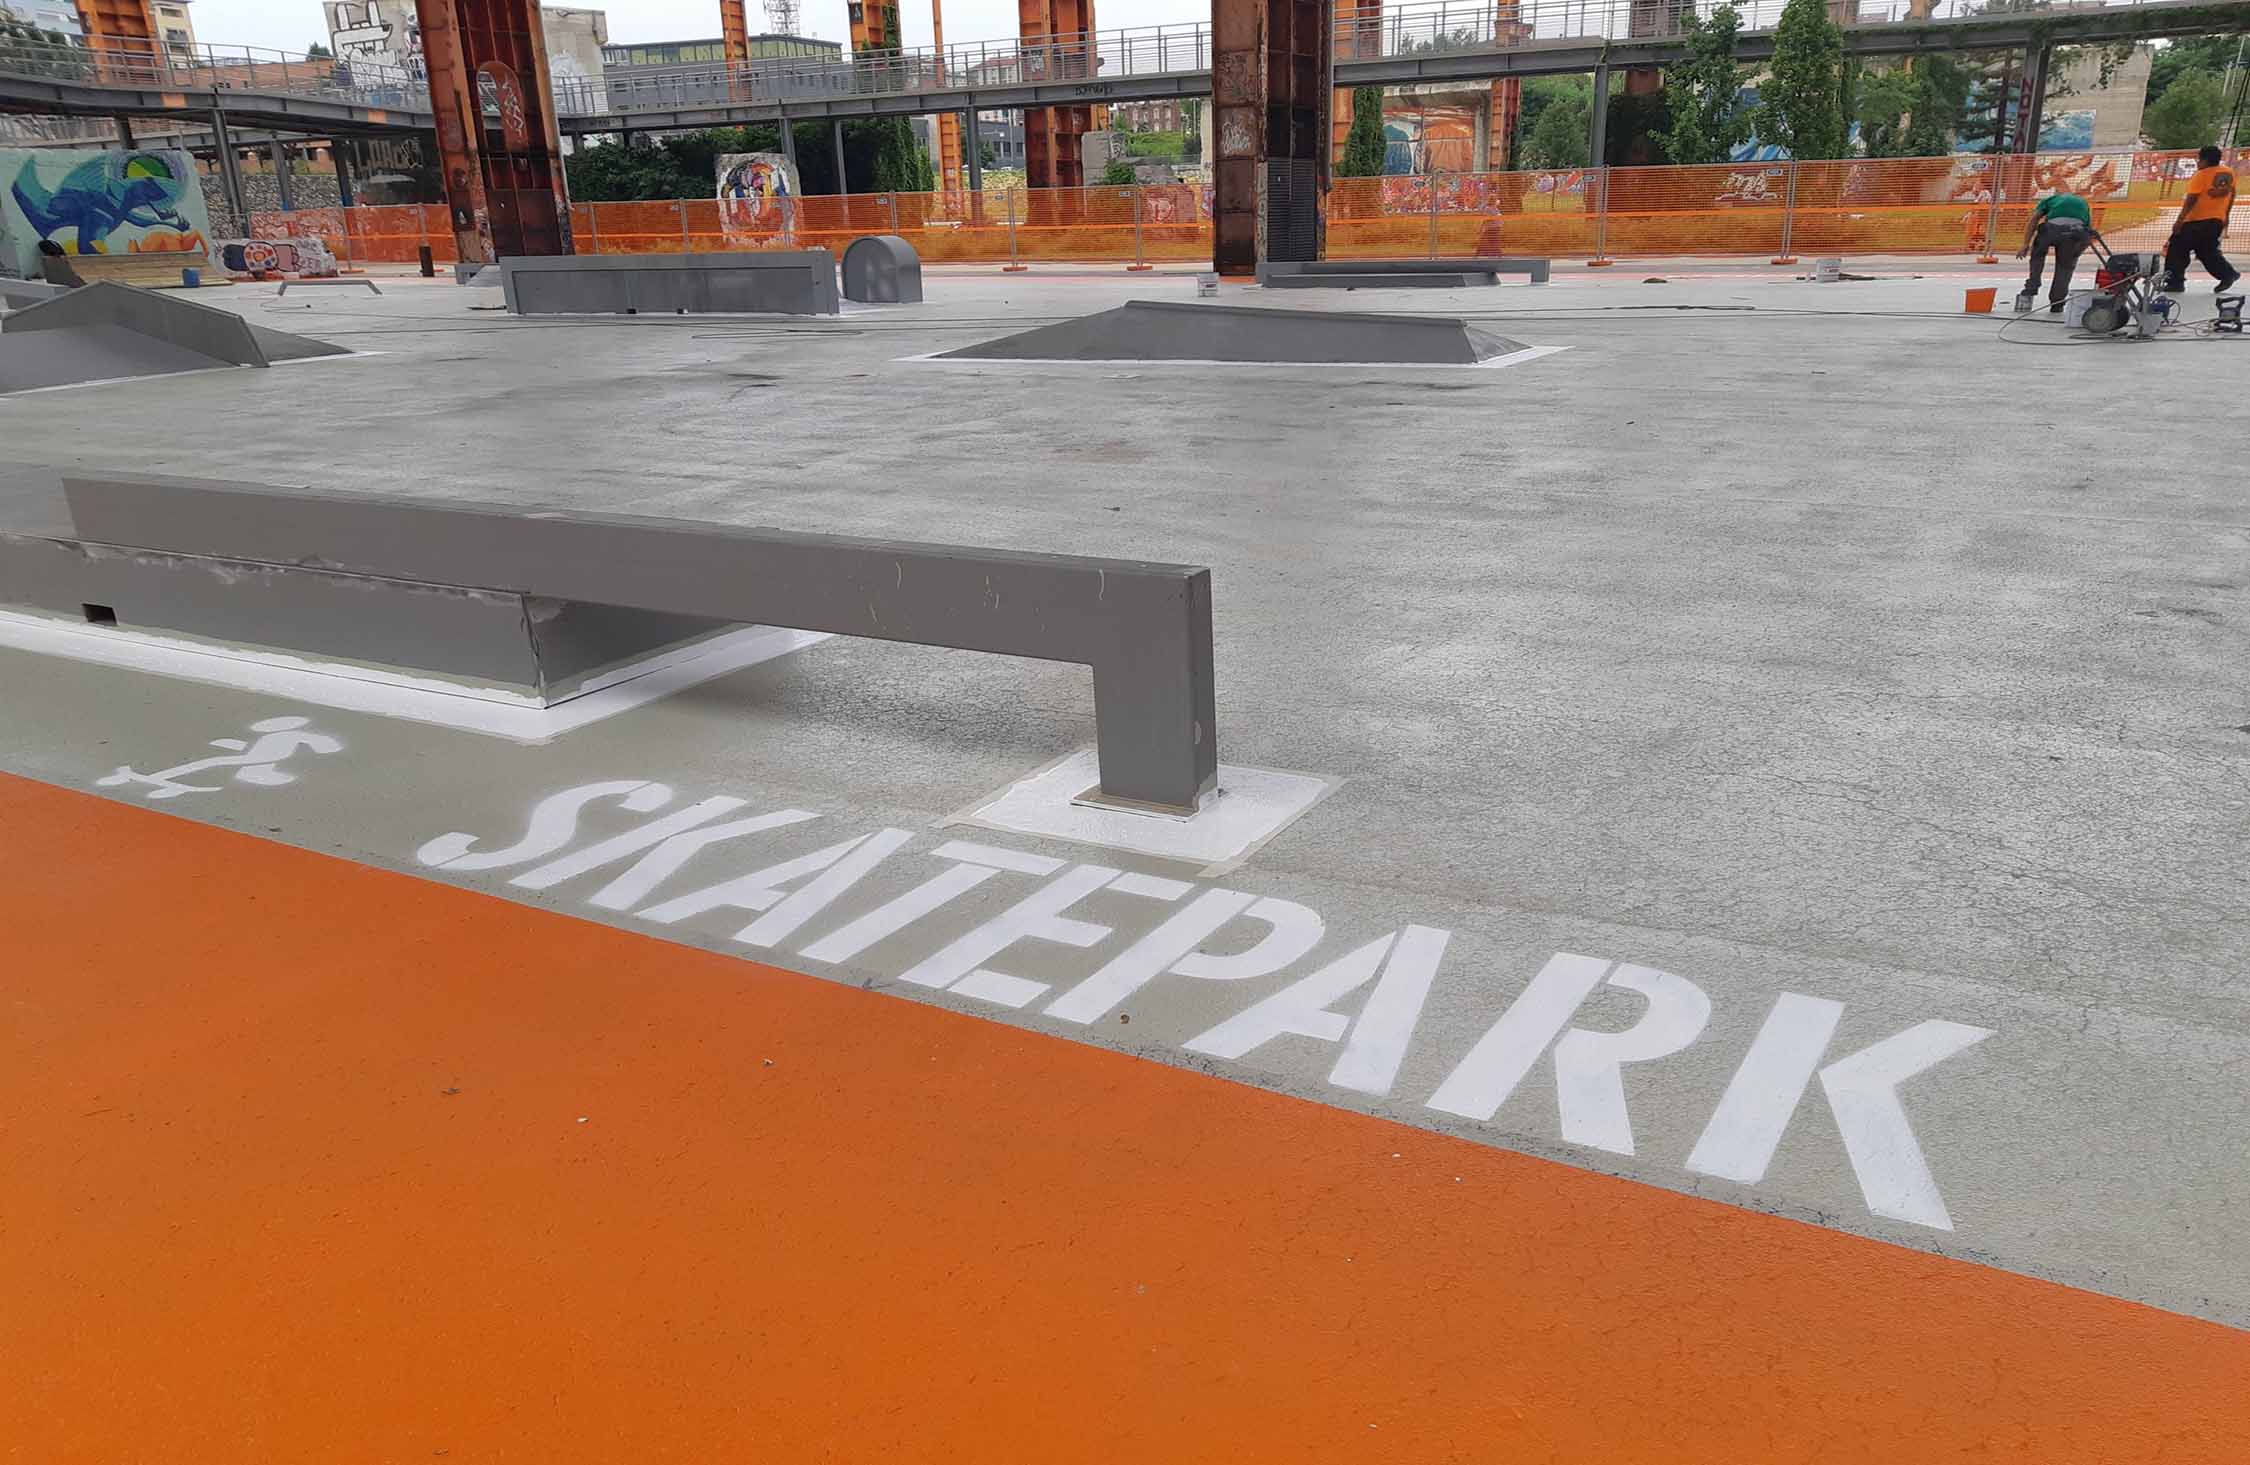 parco-dora-skatepark-1-scaled-desk